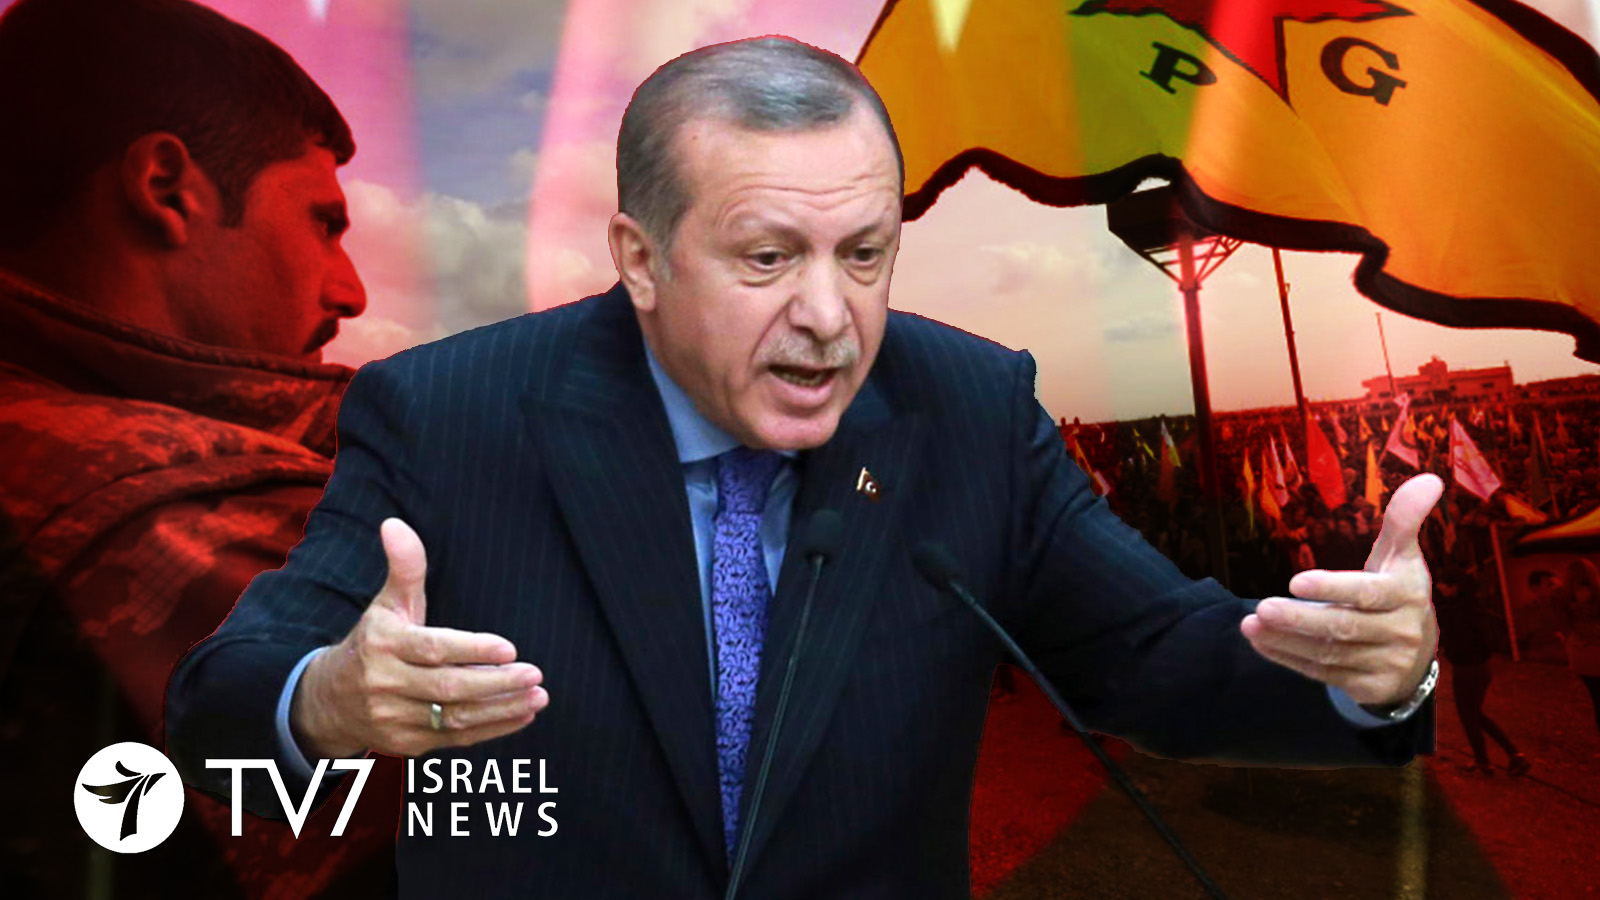 Recep Tayyip Erdoğan - Rebeldes Sirios E Curdos , HD Wallpaper & Backgrounds